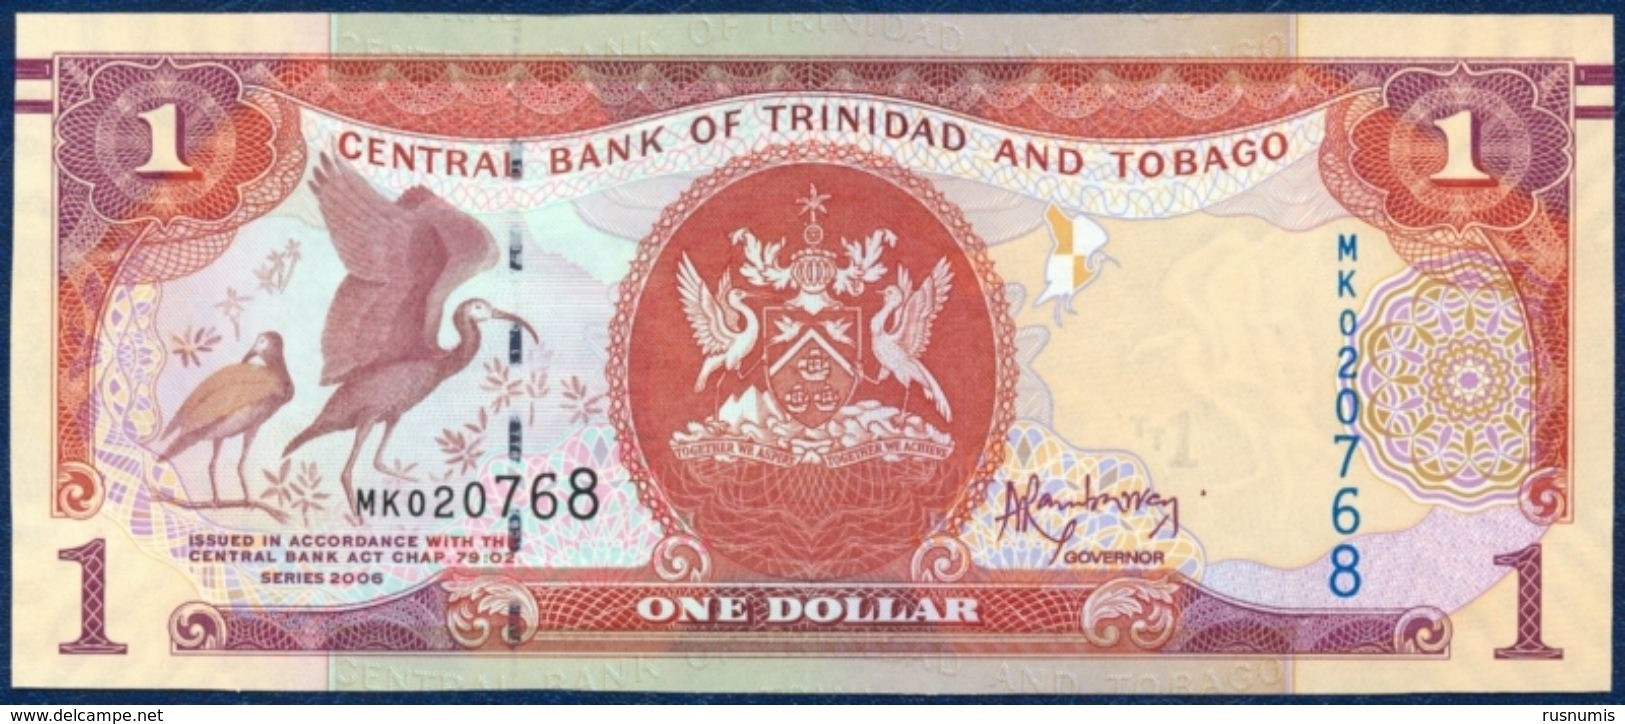 TRINIDAD AND TOBAGO 1 DOLLAR P-46A SIGNATURE: Jwala Rambarran BIRD - SCARLET IBIS CENTRAL BANK 2006 UNC - Trinidad Y Tobago